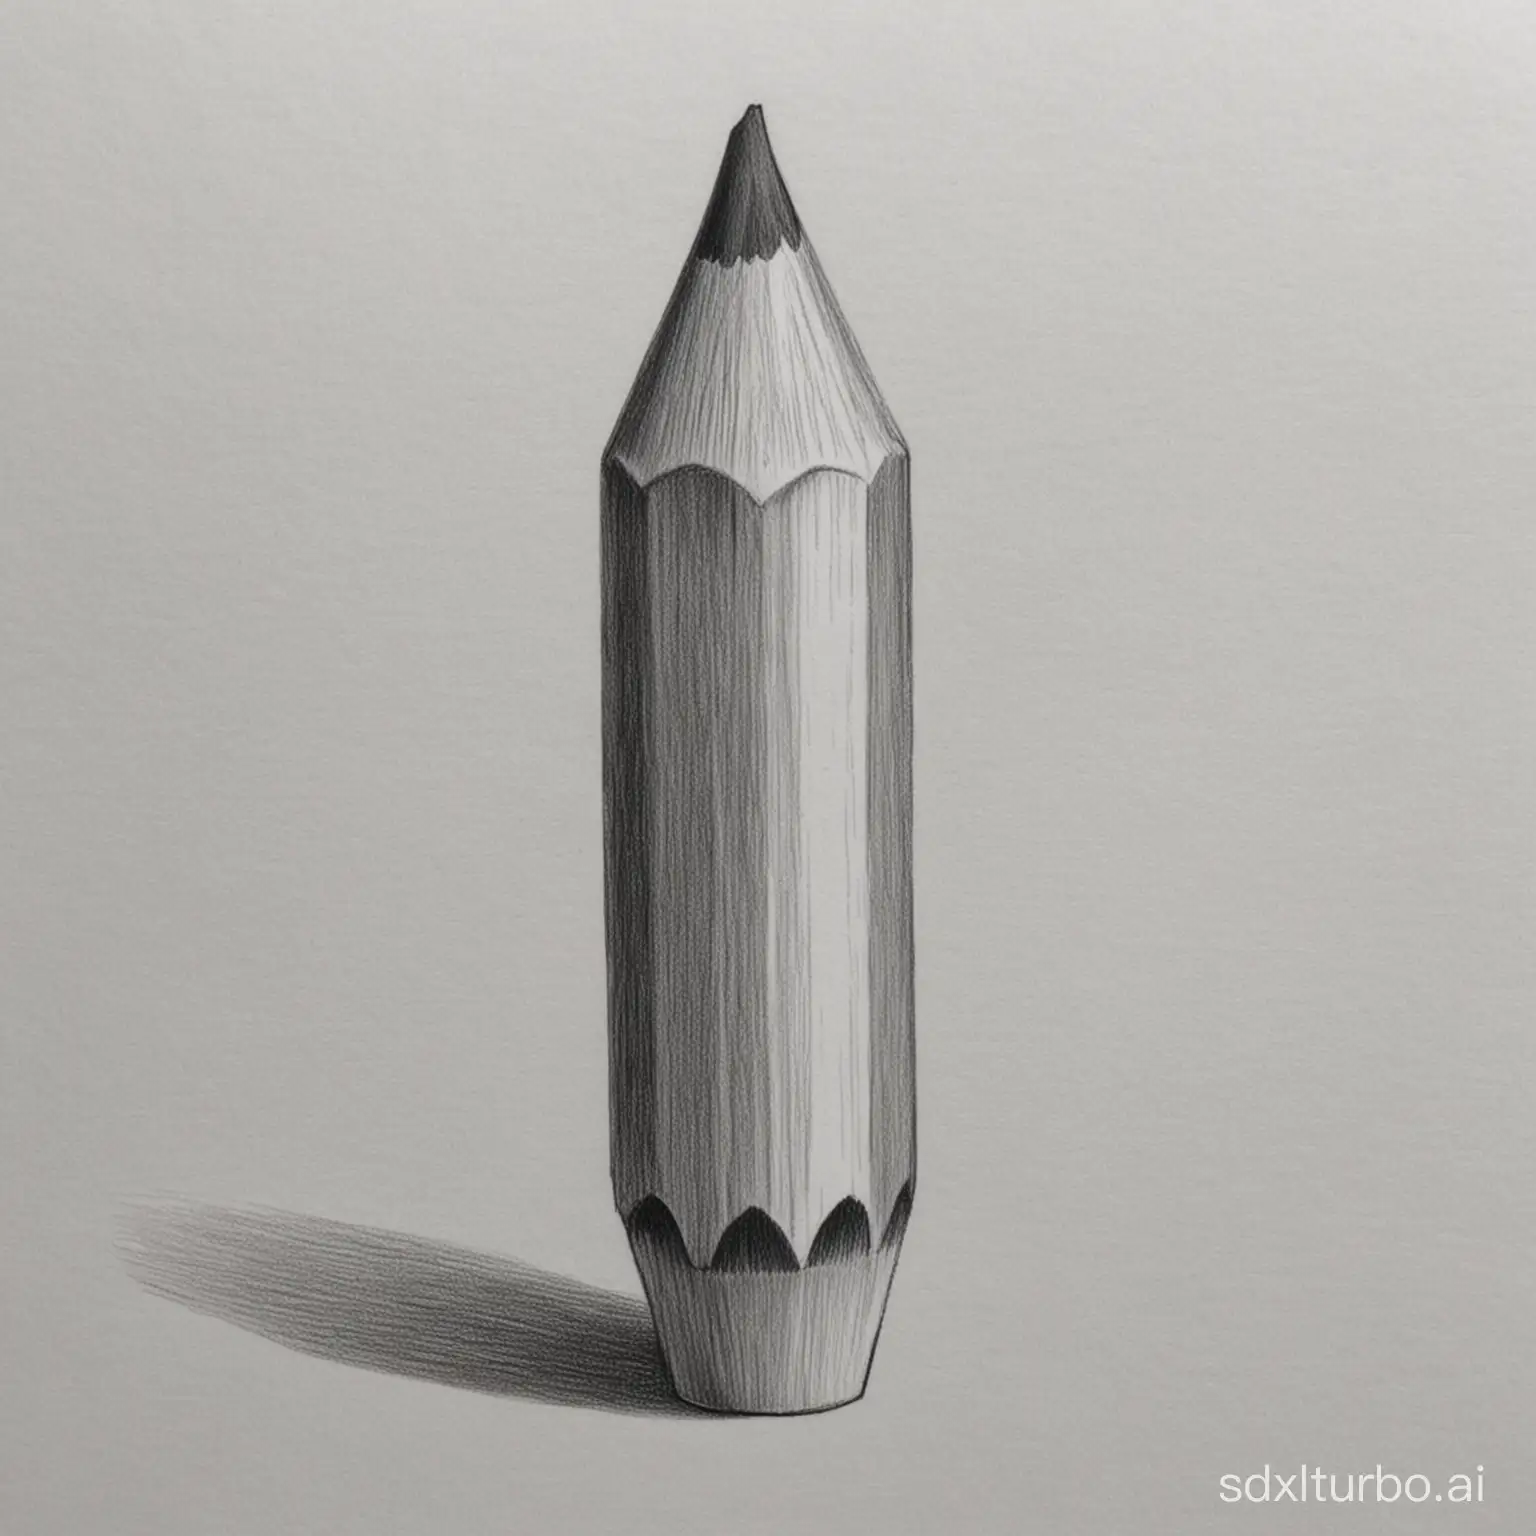 pencil shade sketch